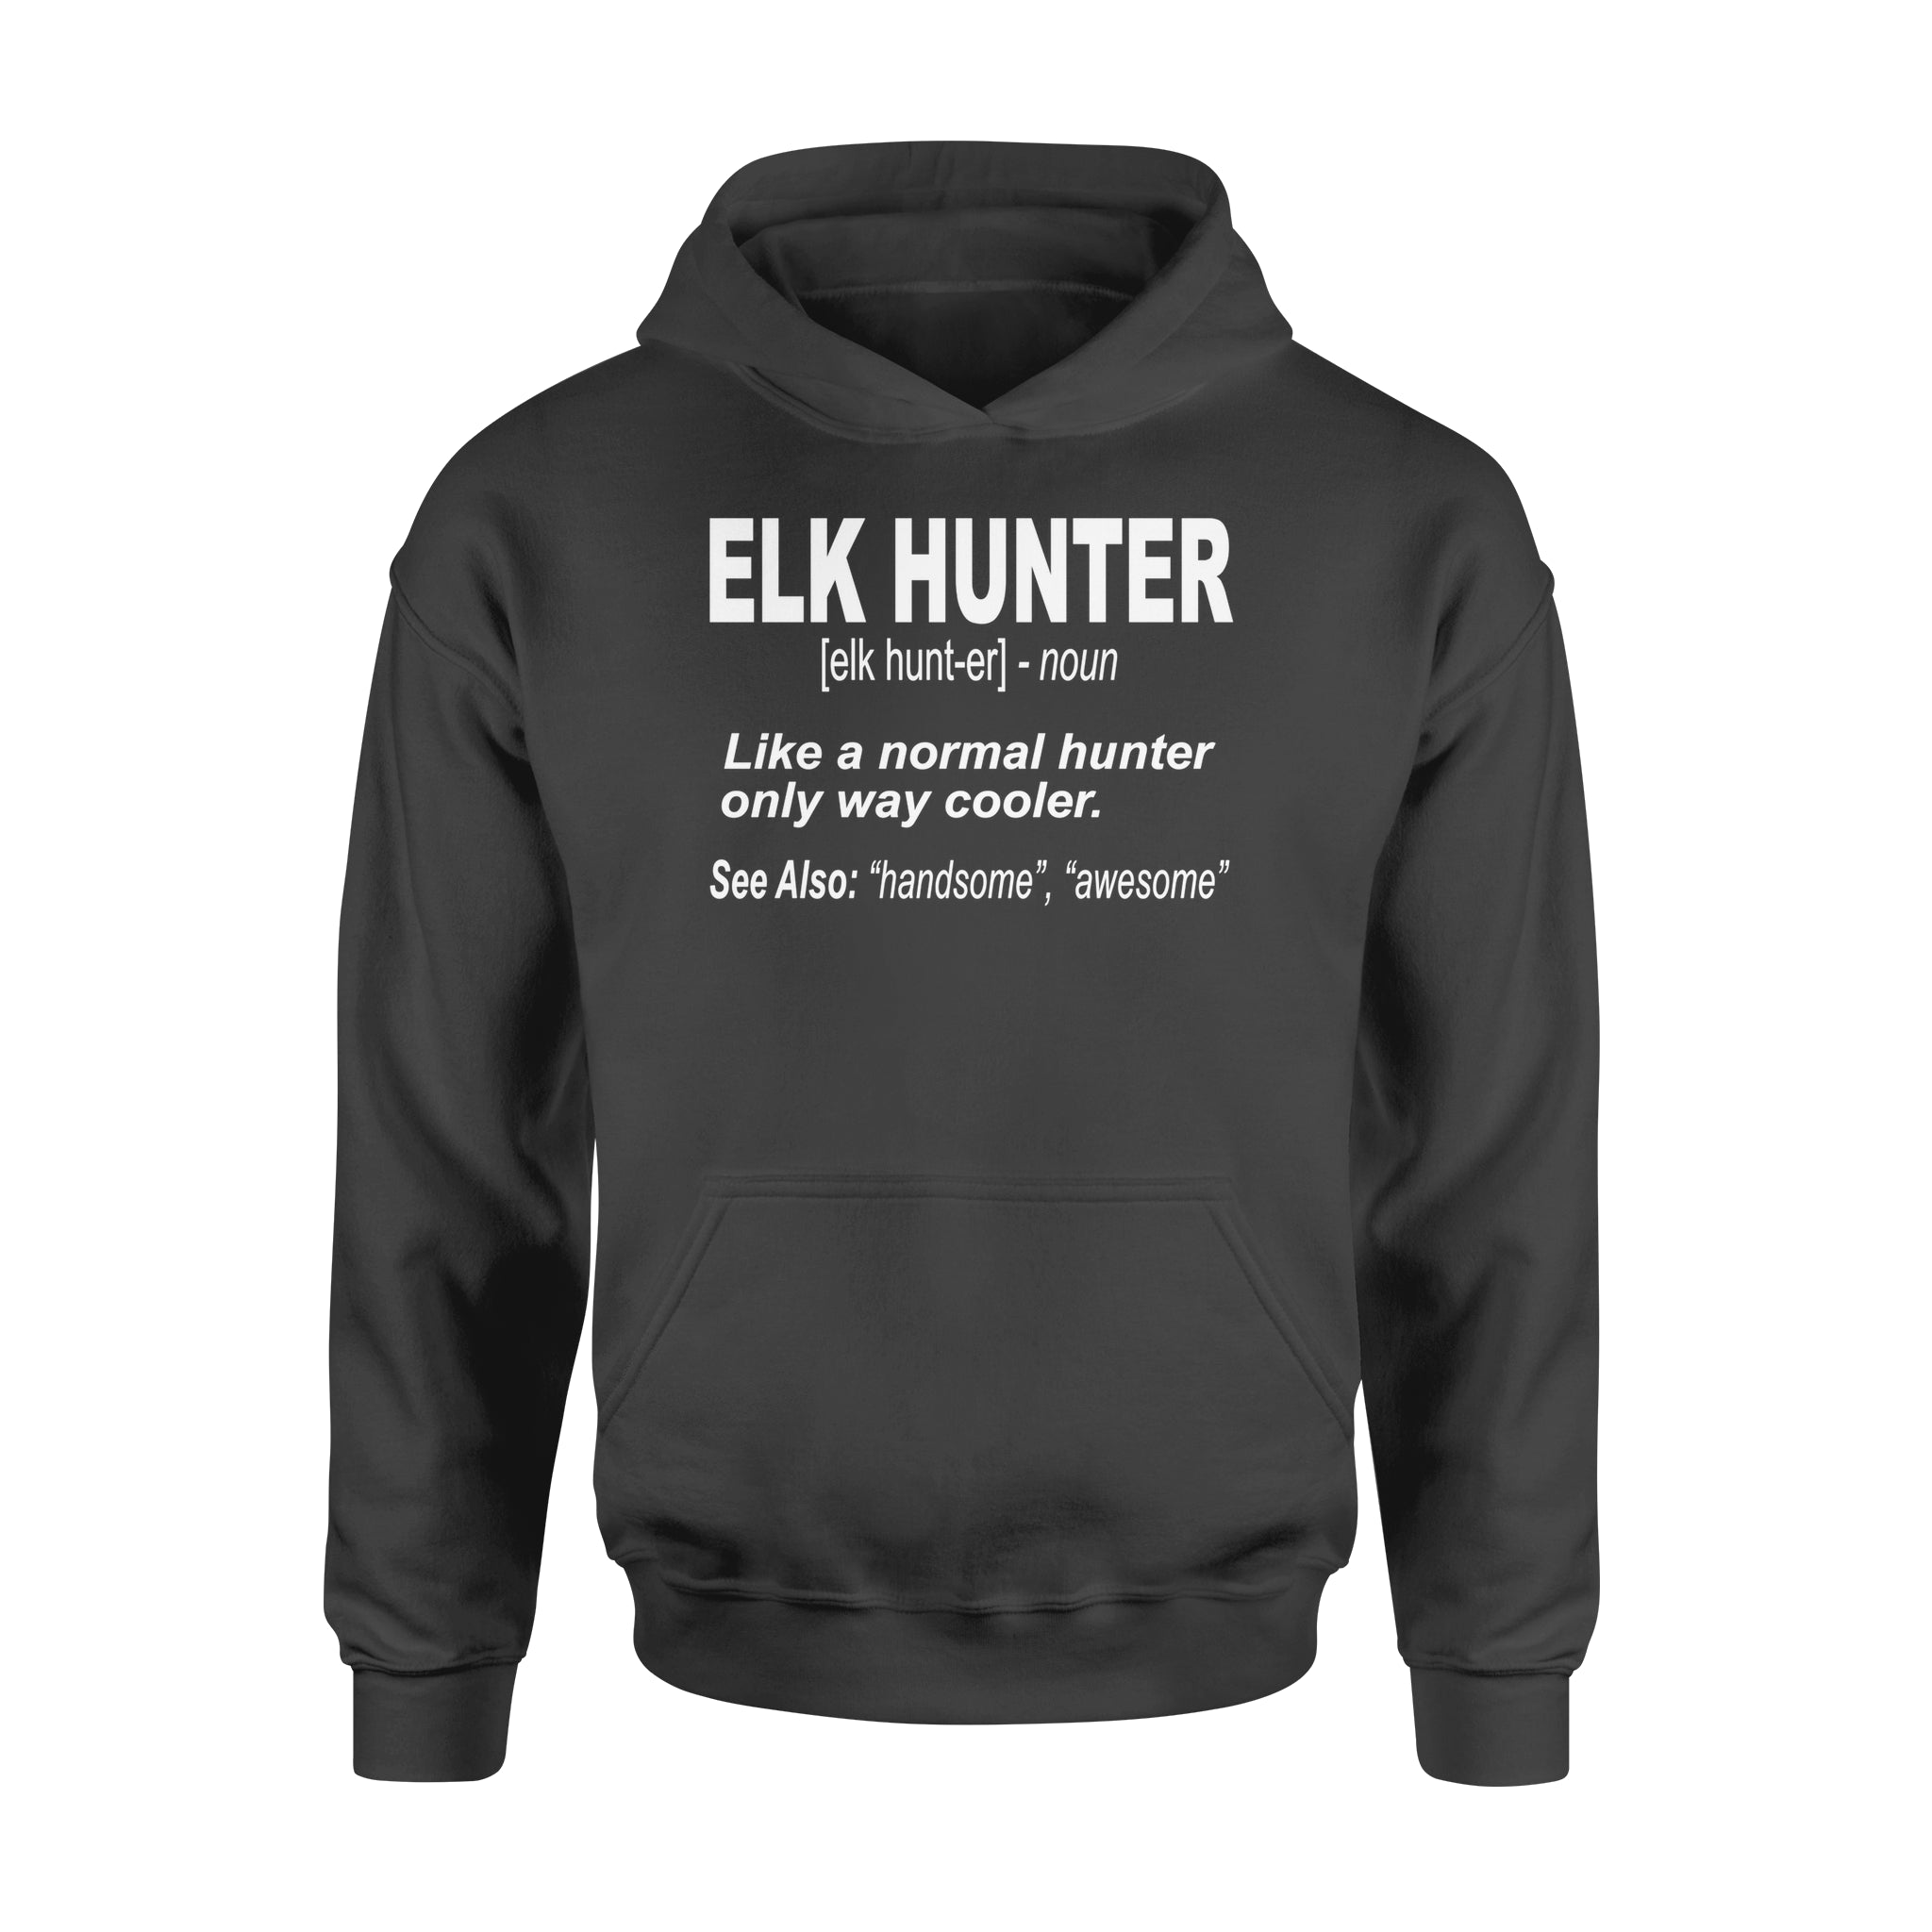 Elk Hunter Hoodie for People Who Hunt Elk "Like a normal hunter only way cooler" - FSD1244D06